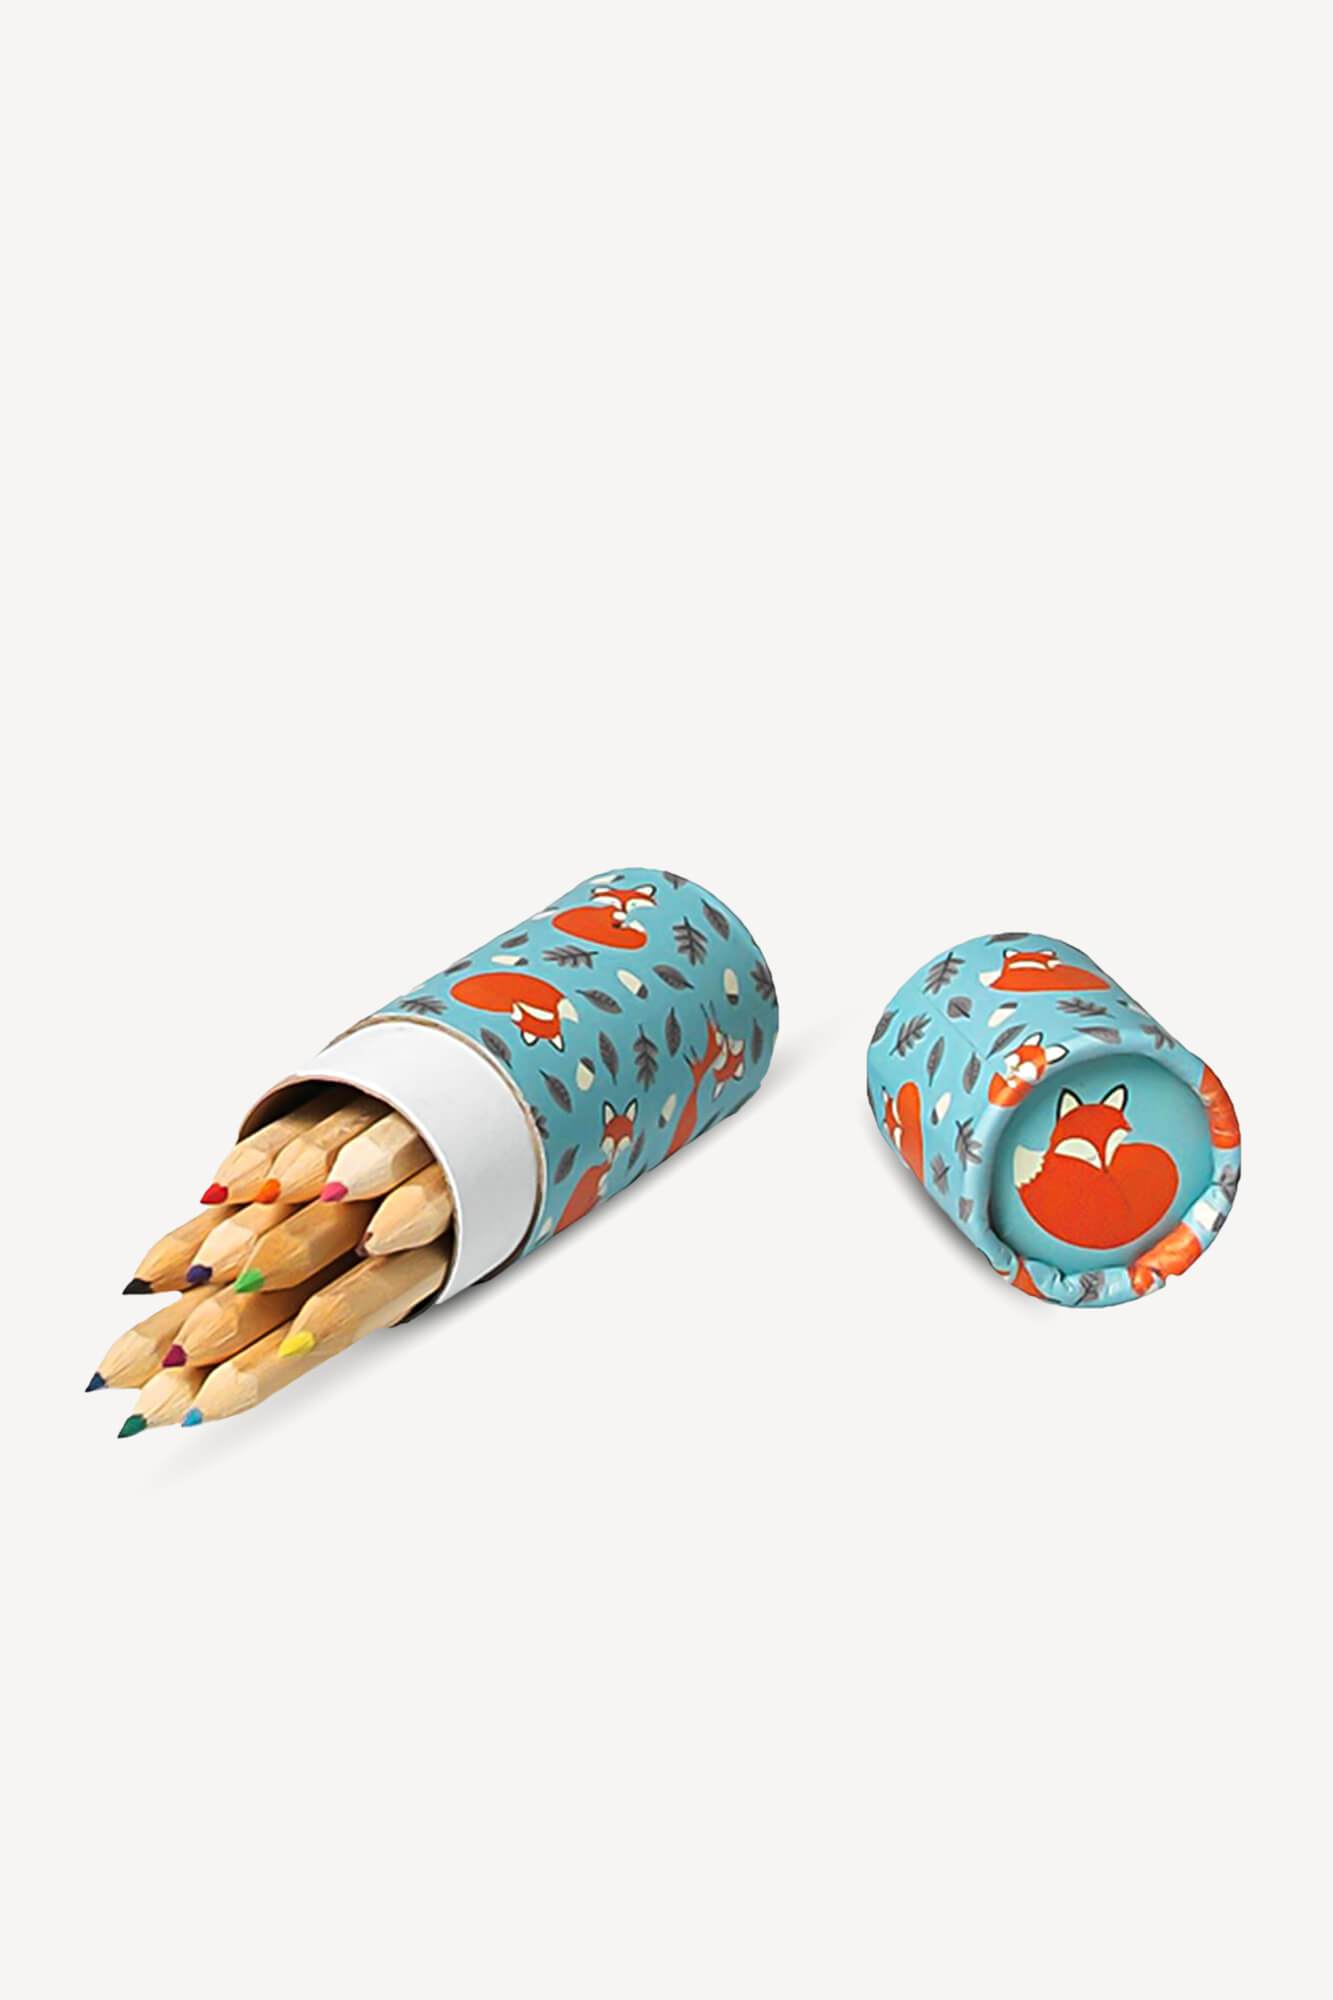 crayons de couleurs "Rusty the fox" avec étui ouvert